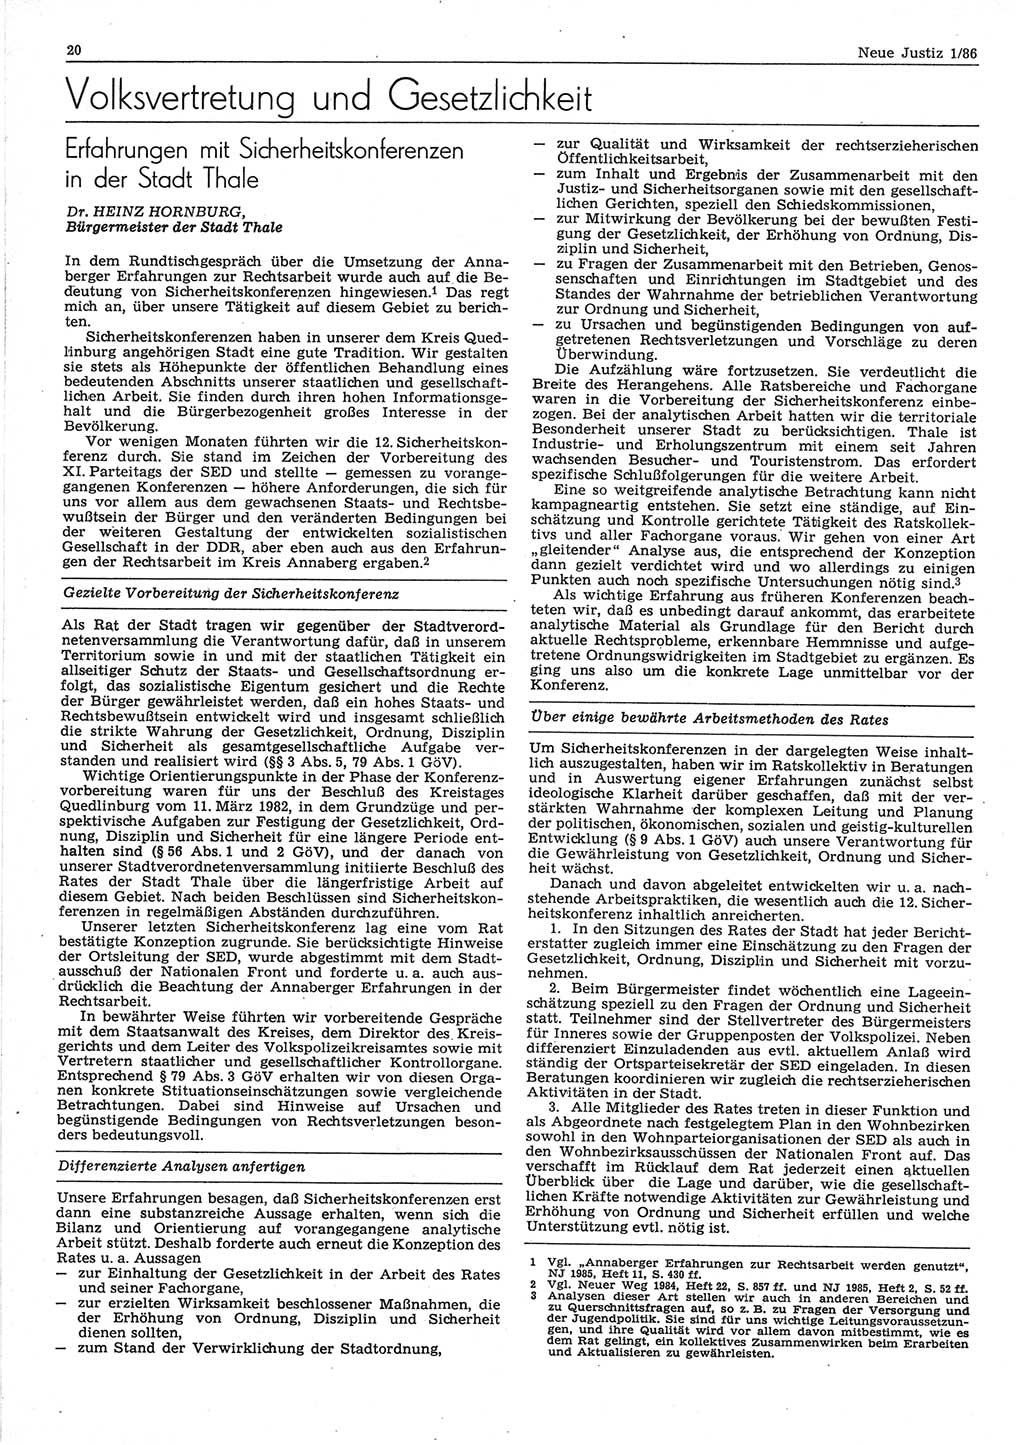 Neue Justiz (NJ), Zeitschrift für sozialistisches Recht und Gesetzlichkeit [Deutsche Demokratische Republik (DDR)], 40. Jahrgang 1986, Seite 20 (NJ DDR 1986, S. 20)